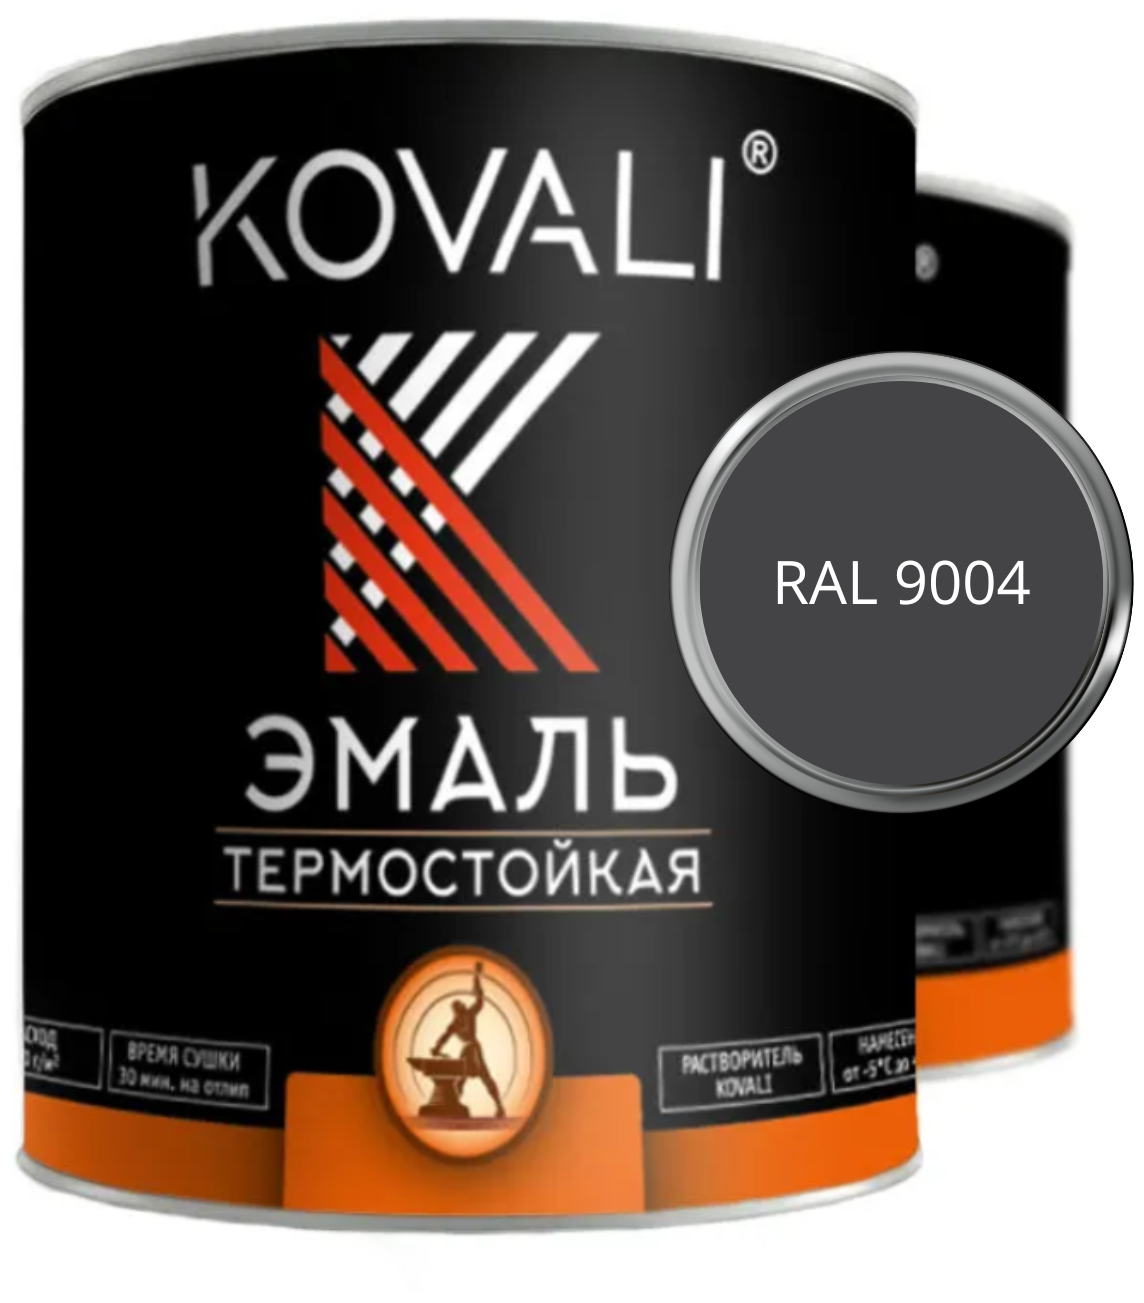 Термостойкая эмаль KOVALI RAL 9004 Сигнальный черный 400С 0,8кг краска по металлу, по ржавчине, быстросохнущая ,краска Ковали - фотография № 1